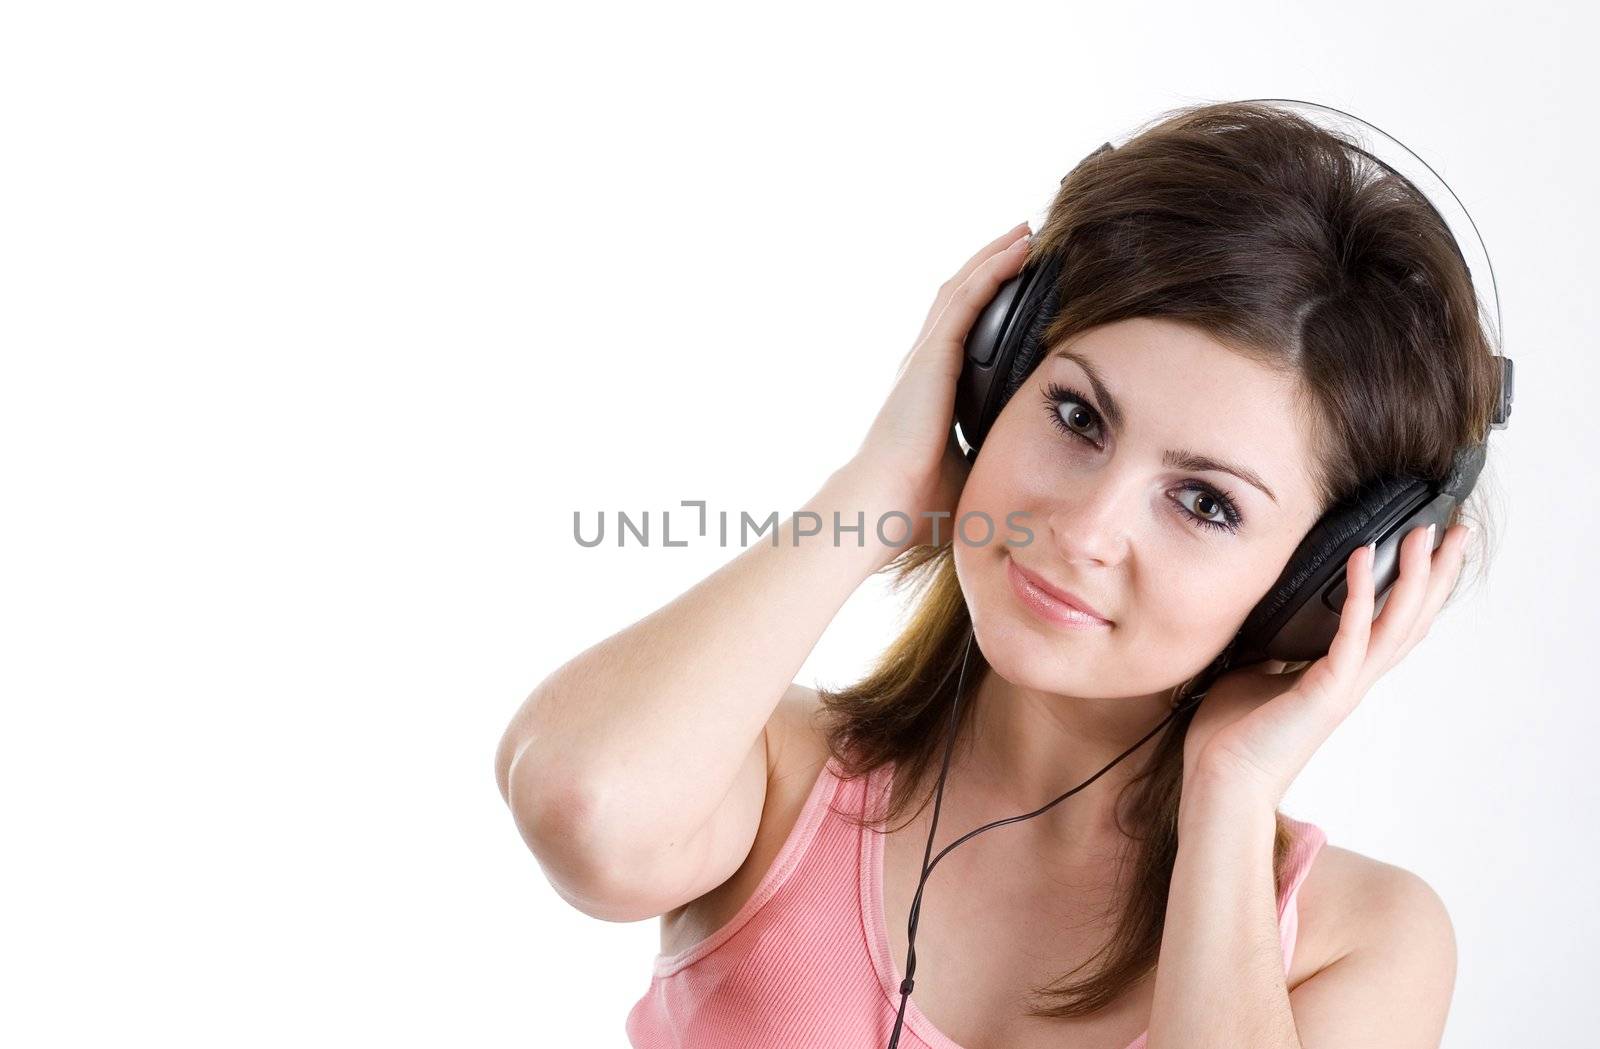 Woman in headphone by velkol